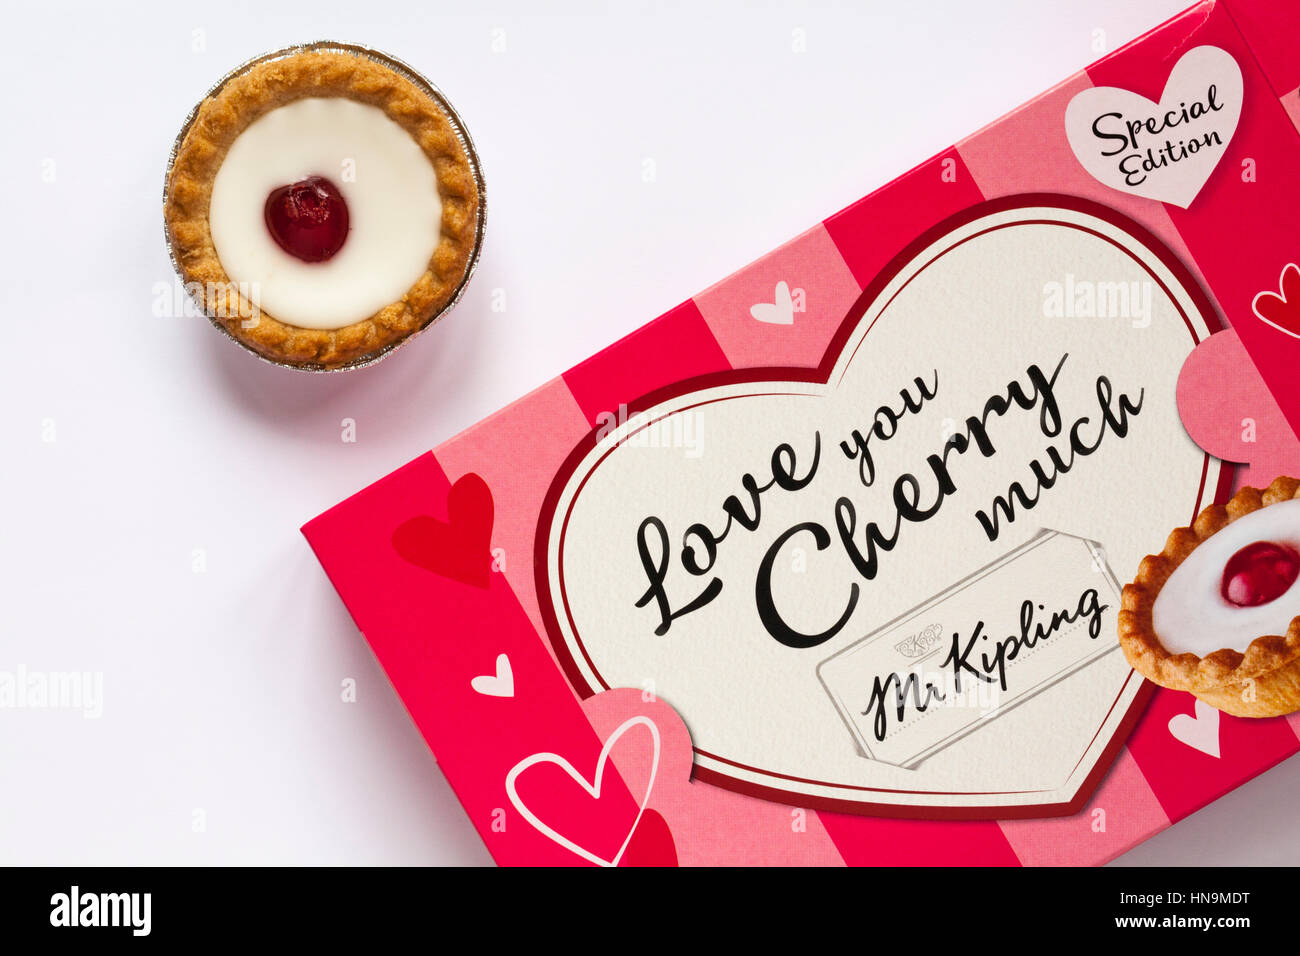 Caja de edición especial Sr. Kipling te amo mucho Cherry Bakewell tartas  listos para celebrar el Día de San Valentín con una tarta retirado del box  set sobre fondo blanco Fotografía de